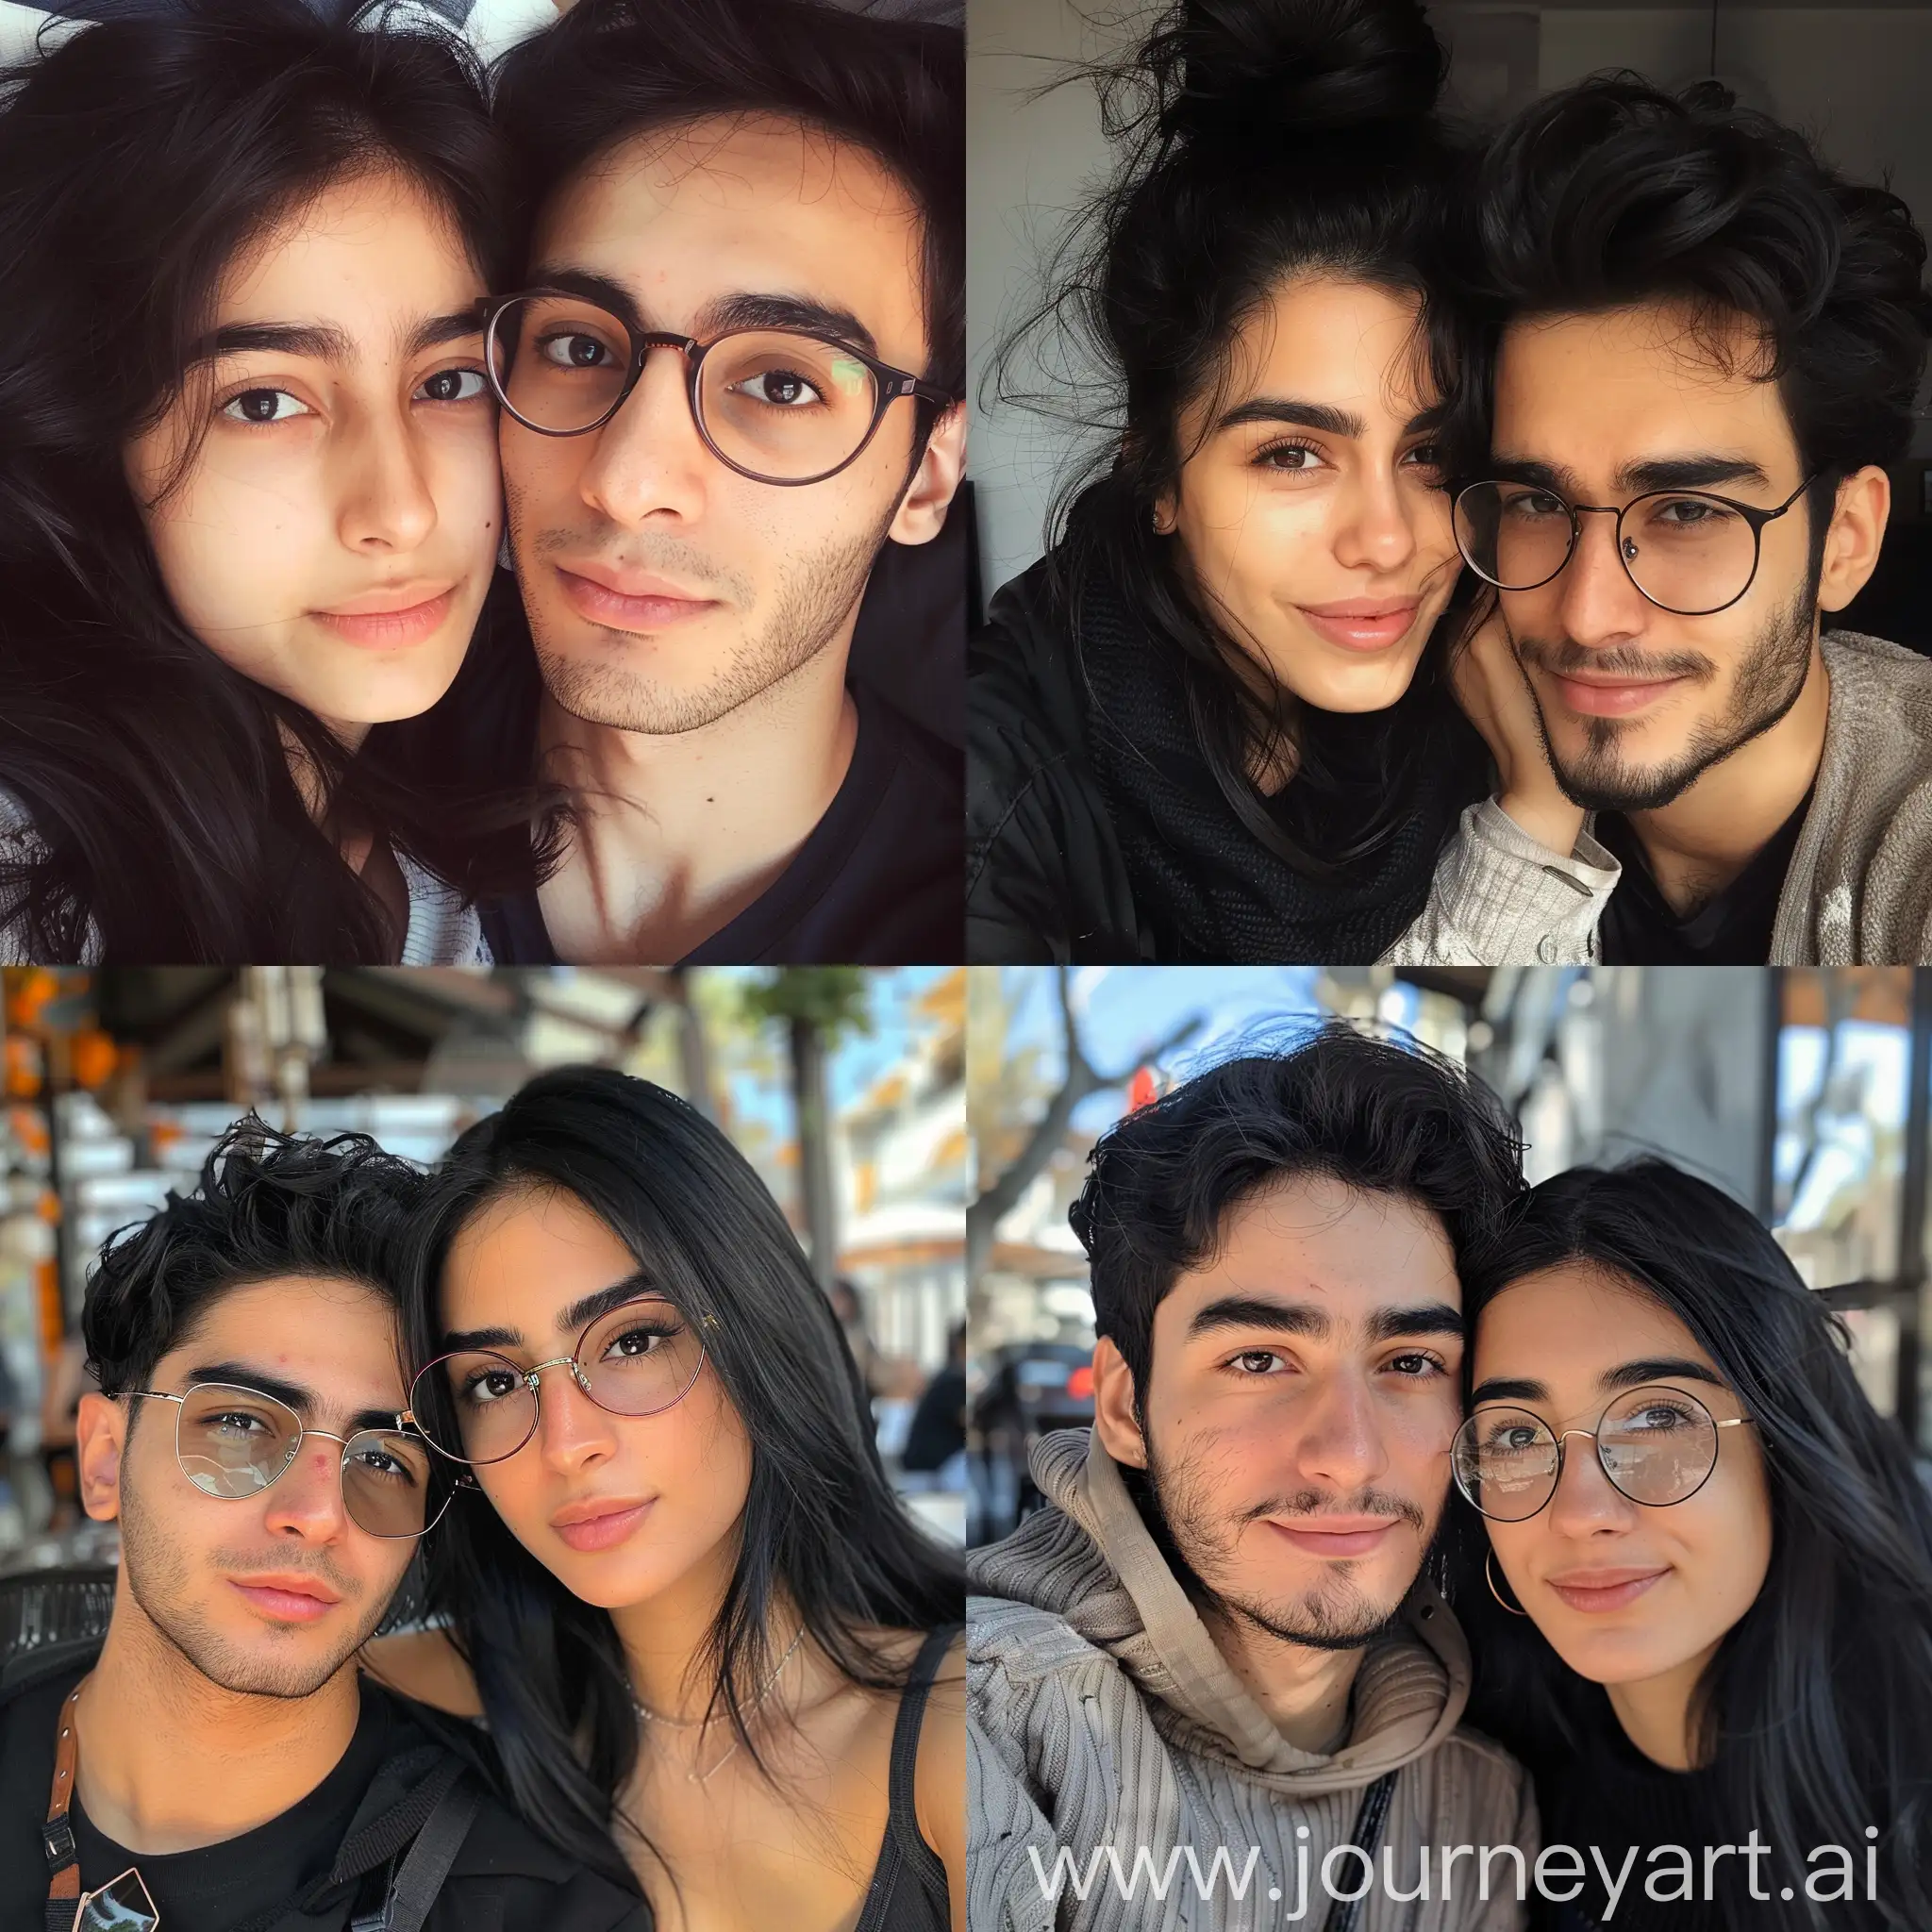 Красивые смуглые армянские девушки с чёрными волосами и карими глазами в возрасте 28 лет состоят в отношениях с красивым смуглым иранским парнем с чёрными волосами и карими глазами, носящем очки и в возрасте 18 лет